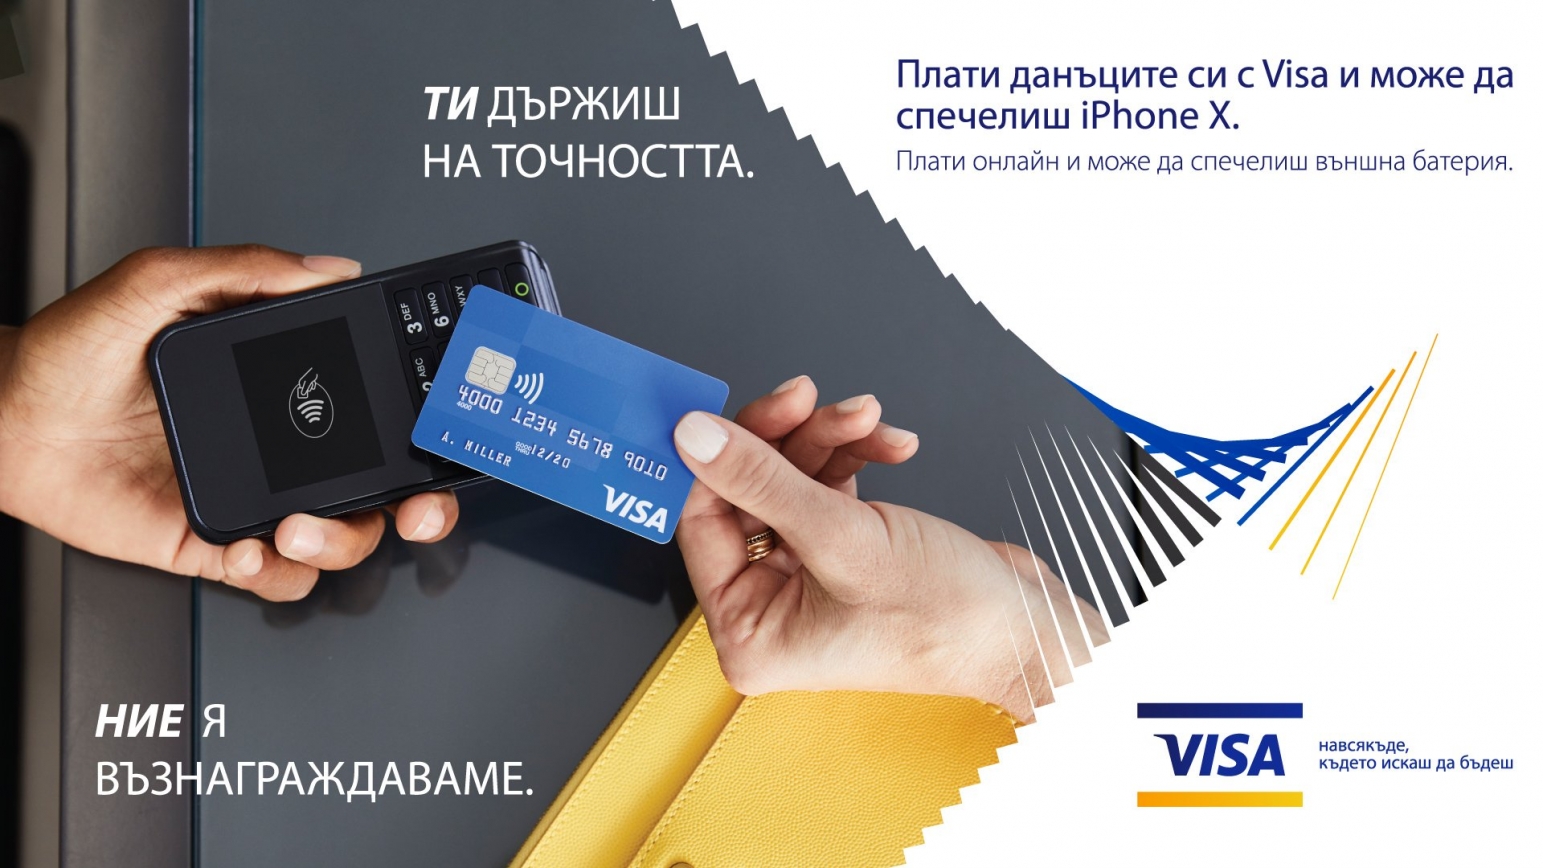 Плати данъците си с кредитна карта Бяла Карта Visa Classic и може да спечелиш iPhone X